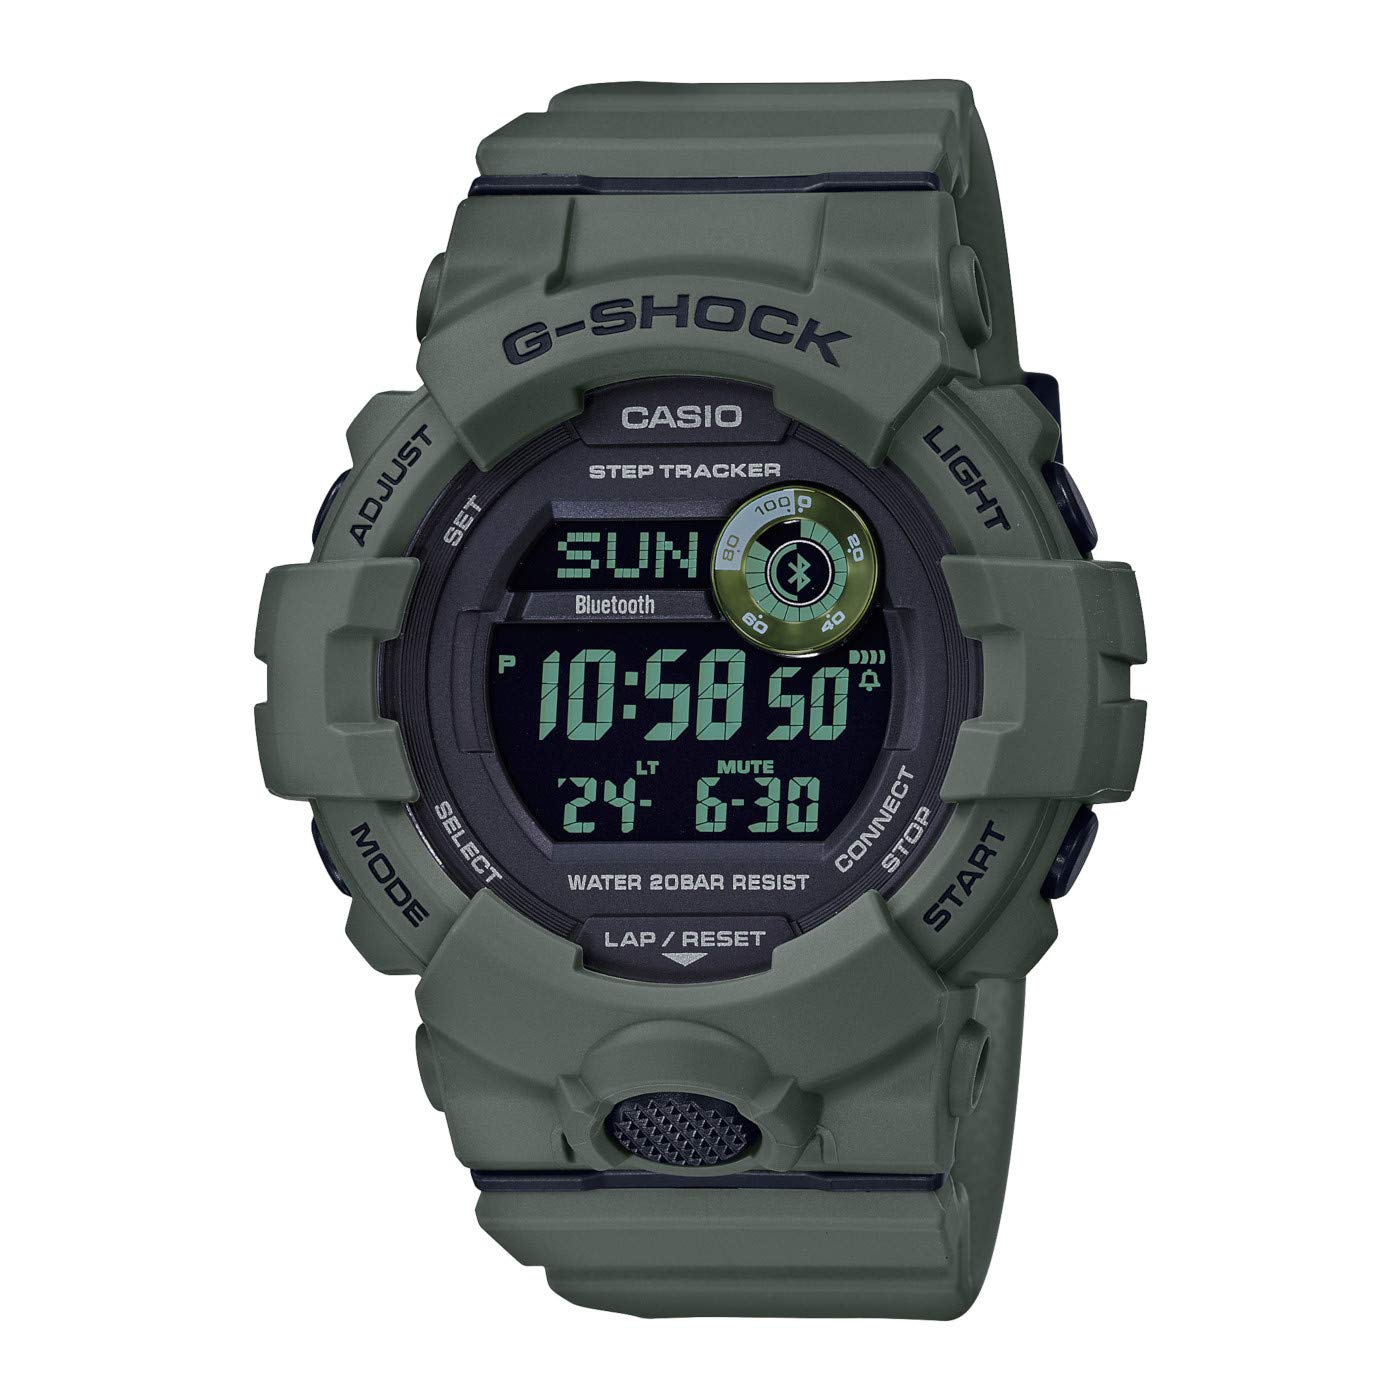 CASIO Herren Digital Quarz Uhr mit Resin Armband GBD-800UC-3ER